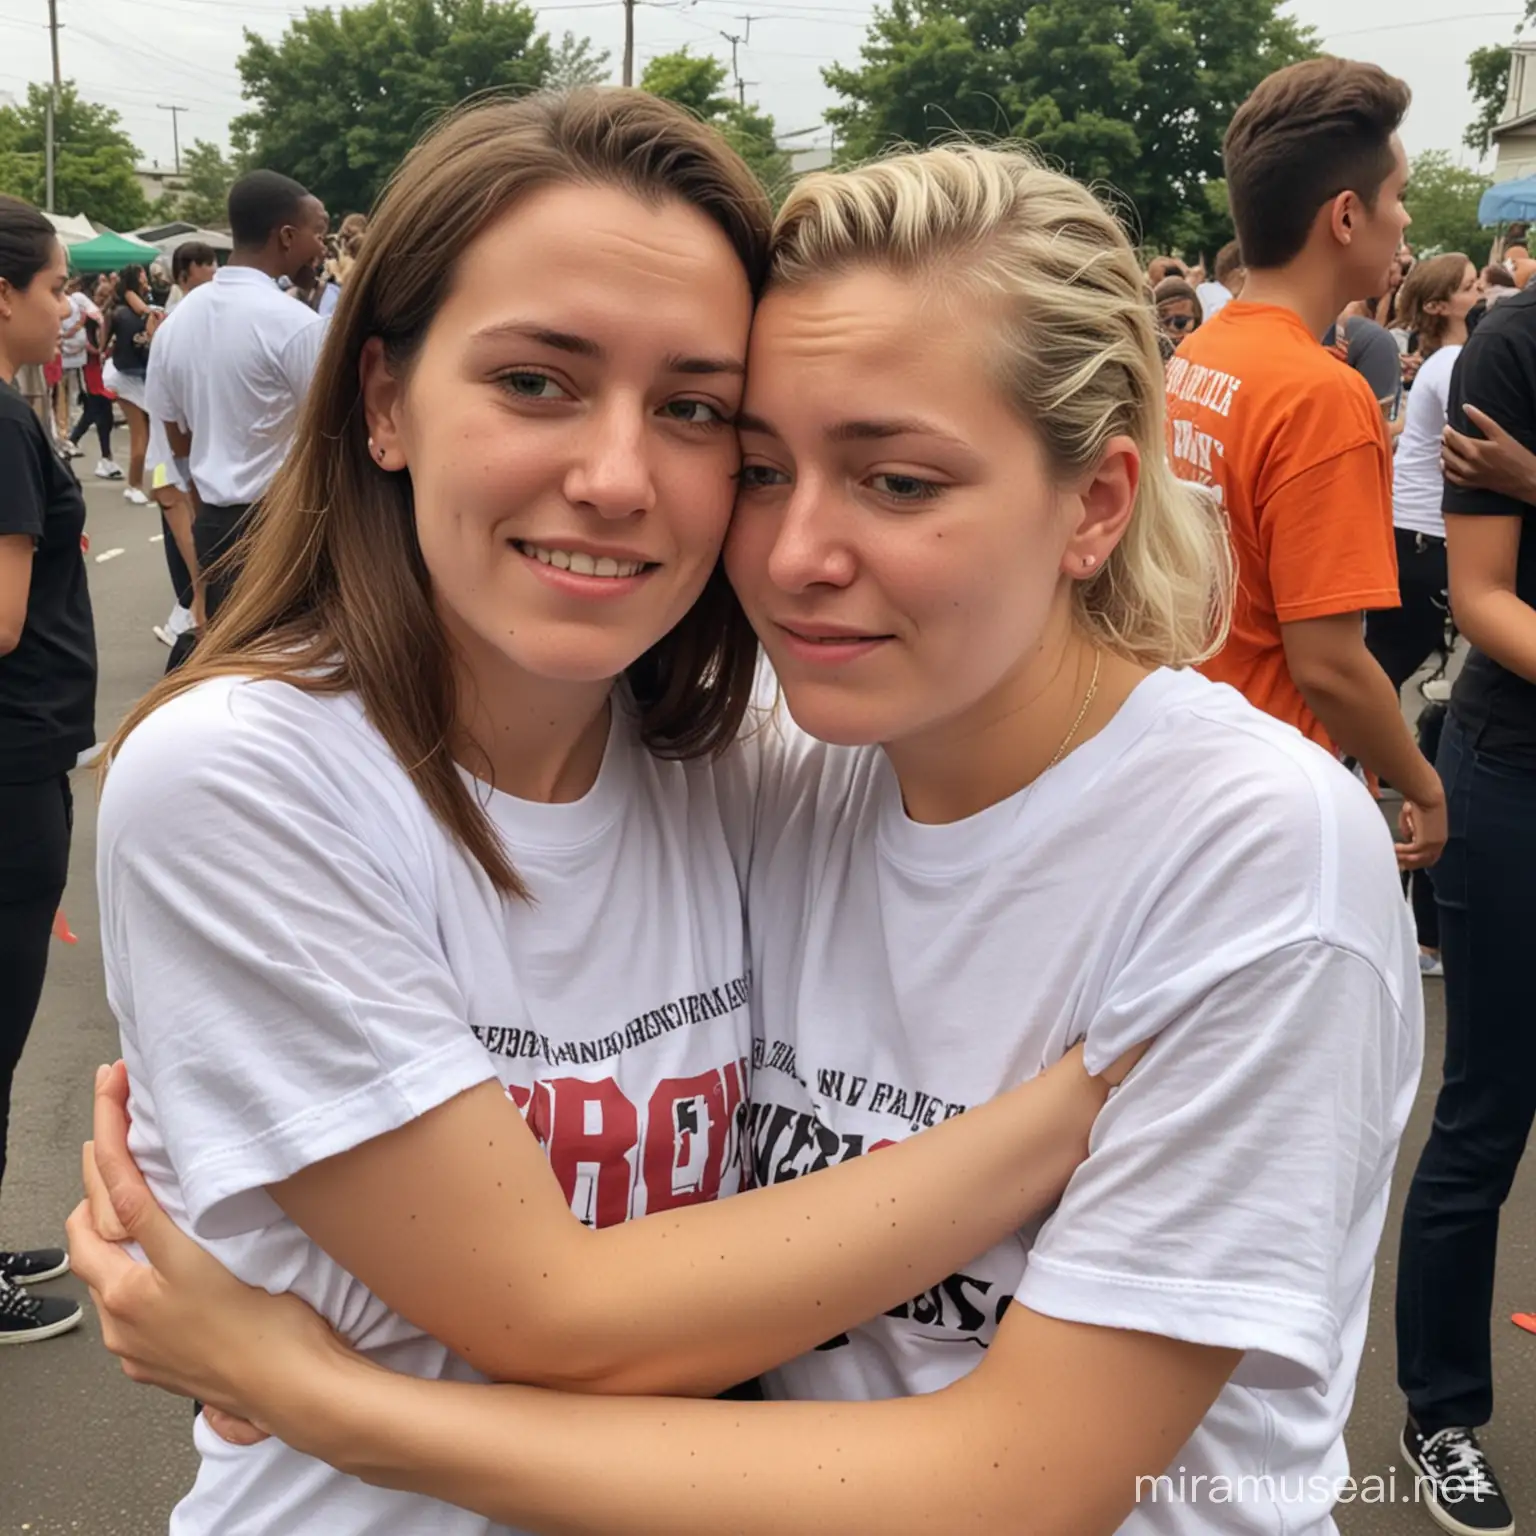 Deux lesbiennes de 21 ans t-shirt manches courtes femme beaucoup pleuré funeraill allongée la tête dans les bras de sa femme 